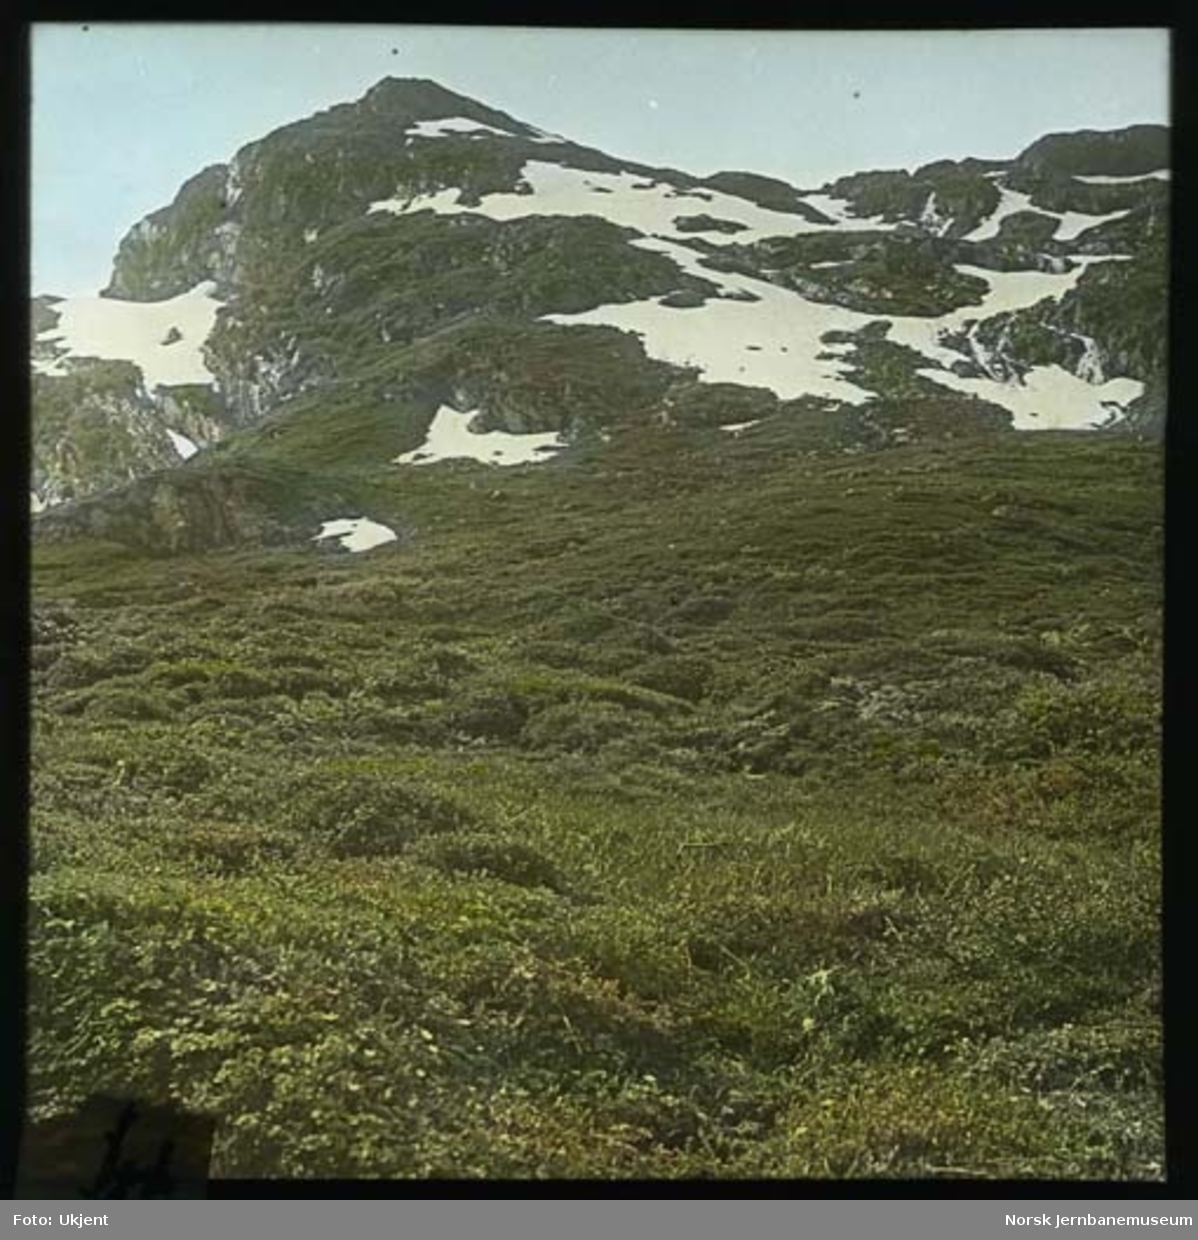 Ikke stedfestede motiver fra norske fjell